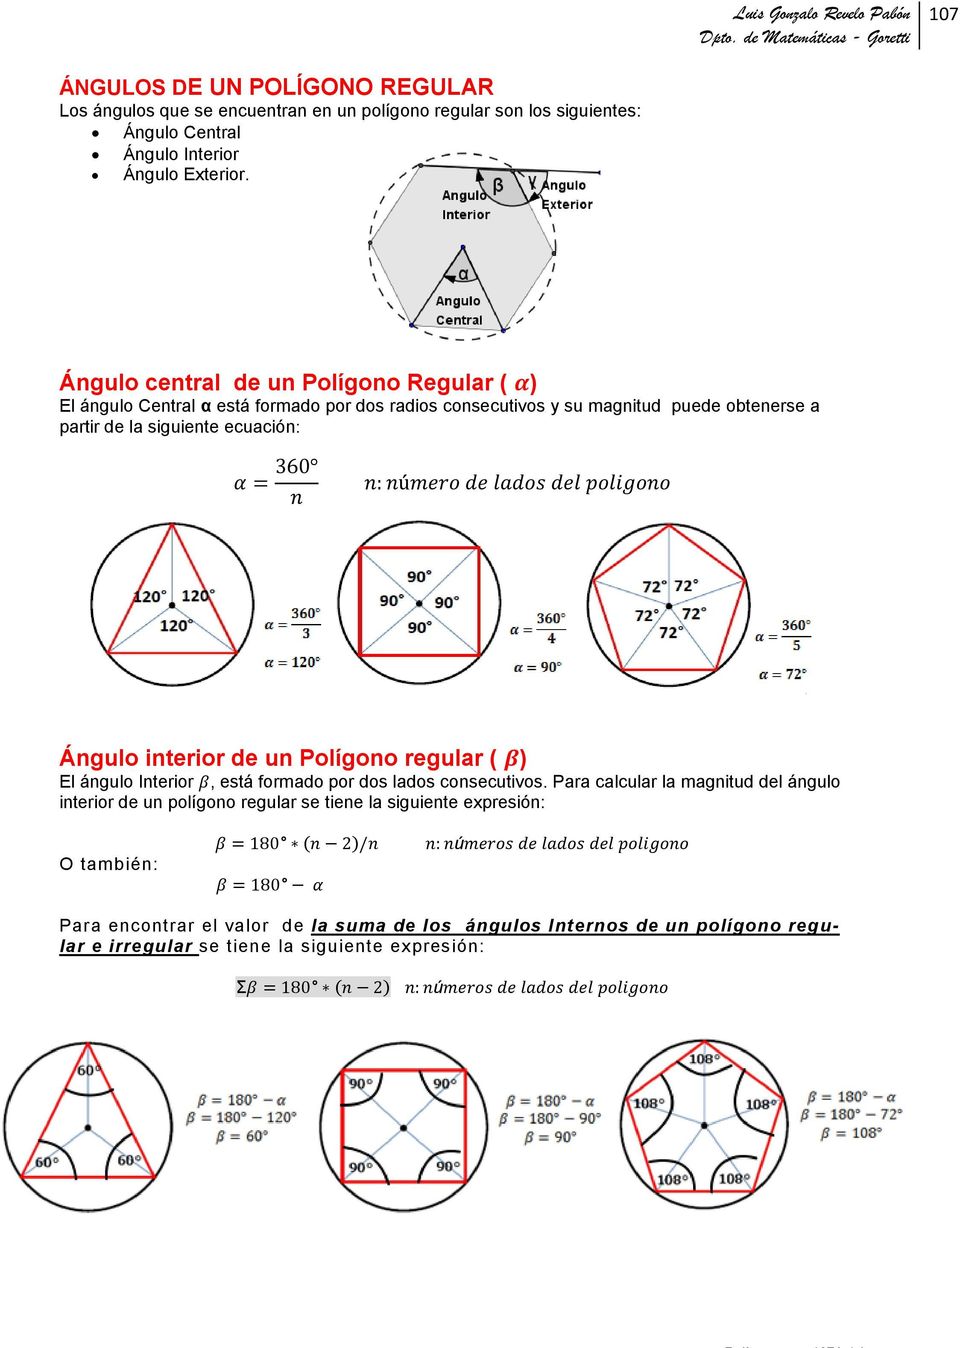 ecuación: Ángulo interior de un Polígono regular ( ) El ángulo Interior, está formado por dos lados consecutivos.